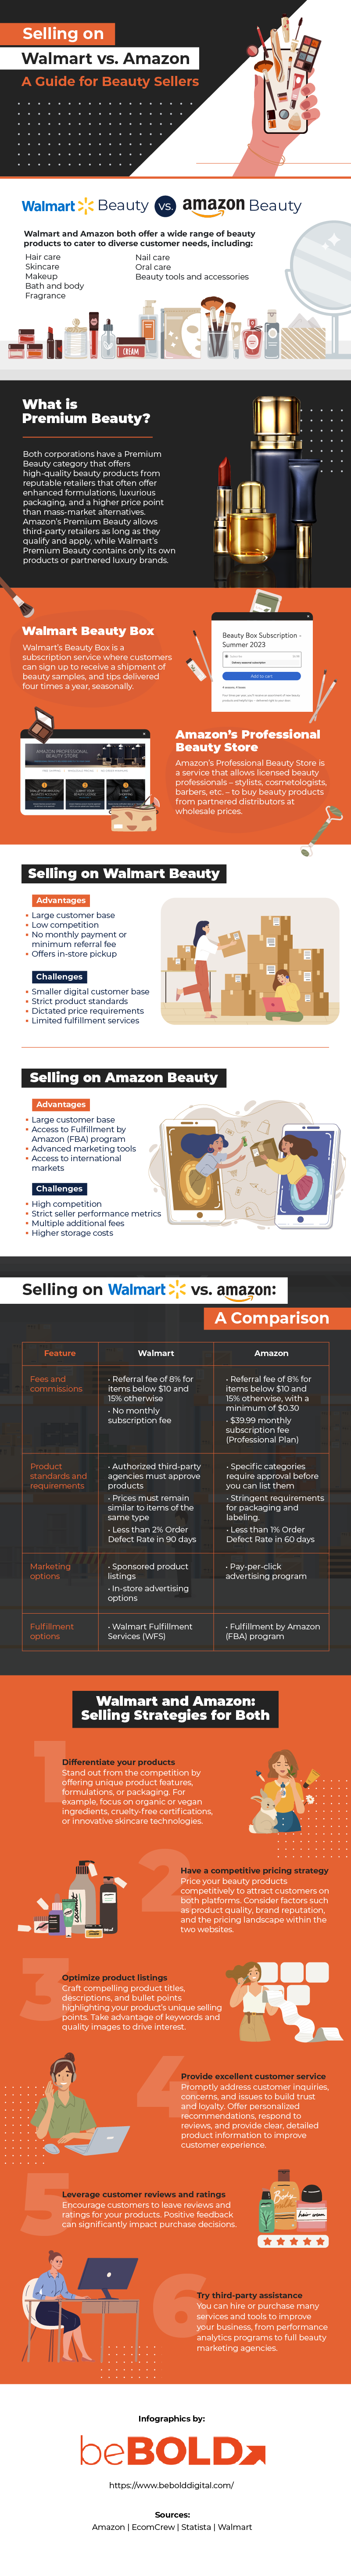 selling on Walmart vs. amazon, walmart vs amazon